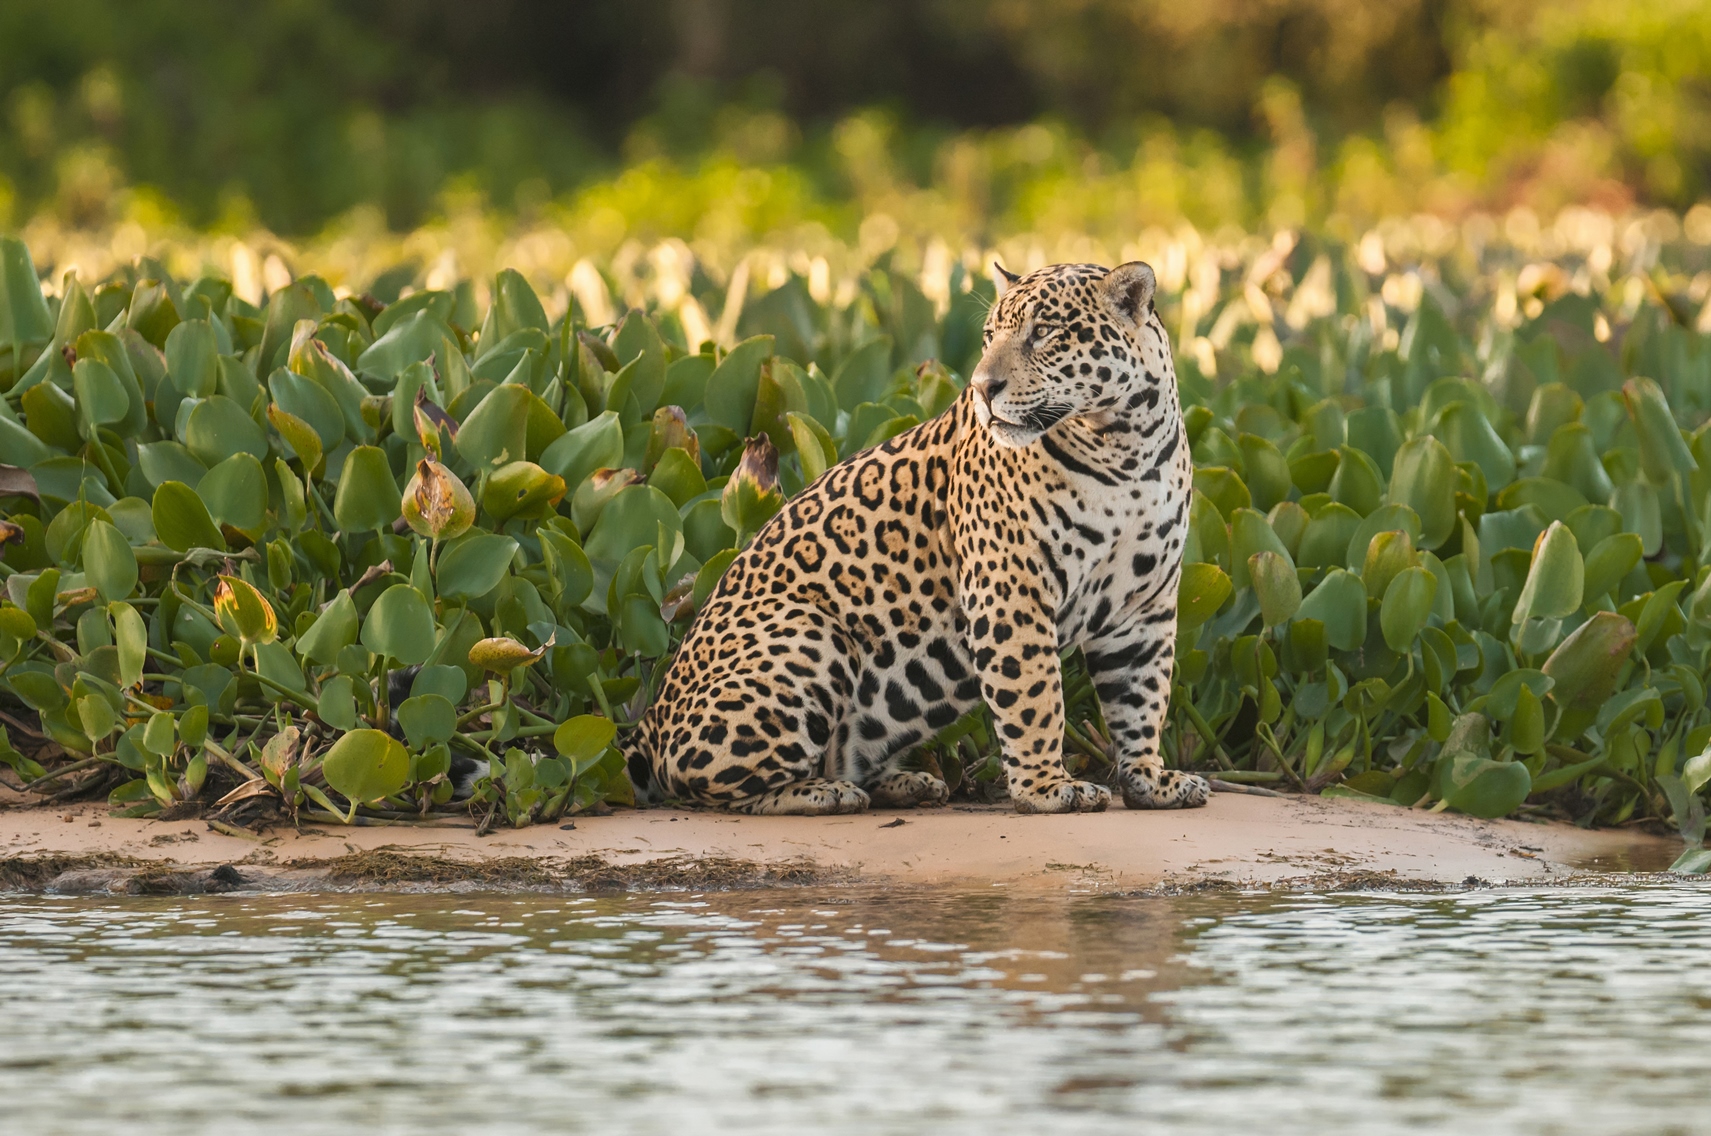 A jaguar pantanal, Brazil